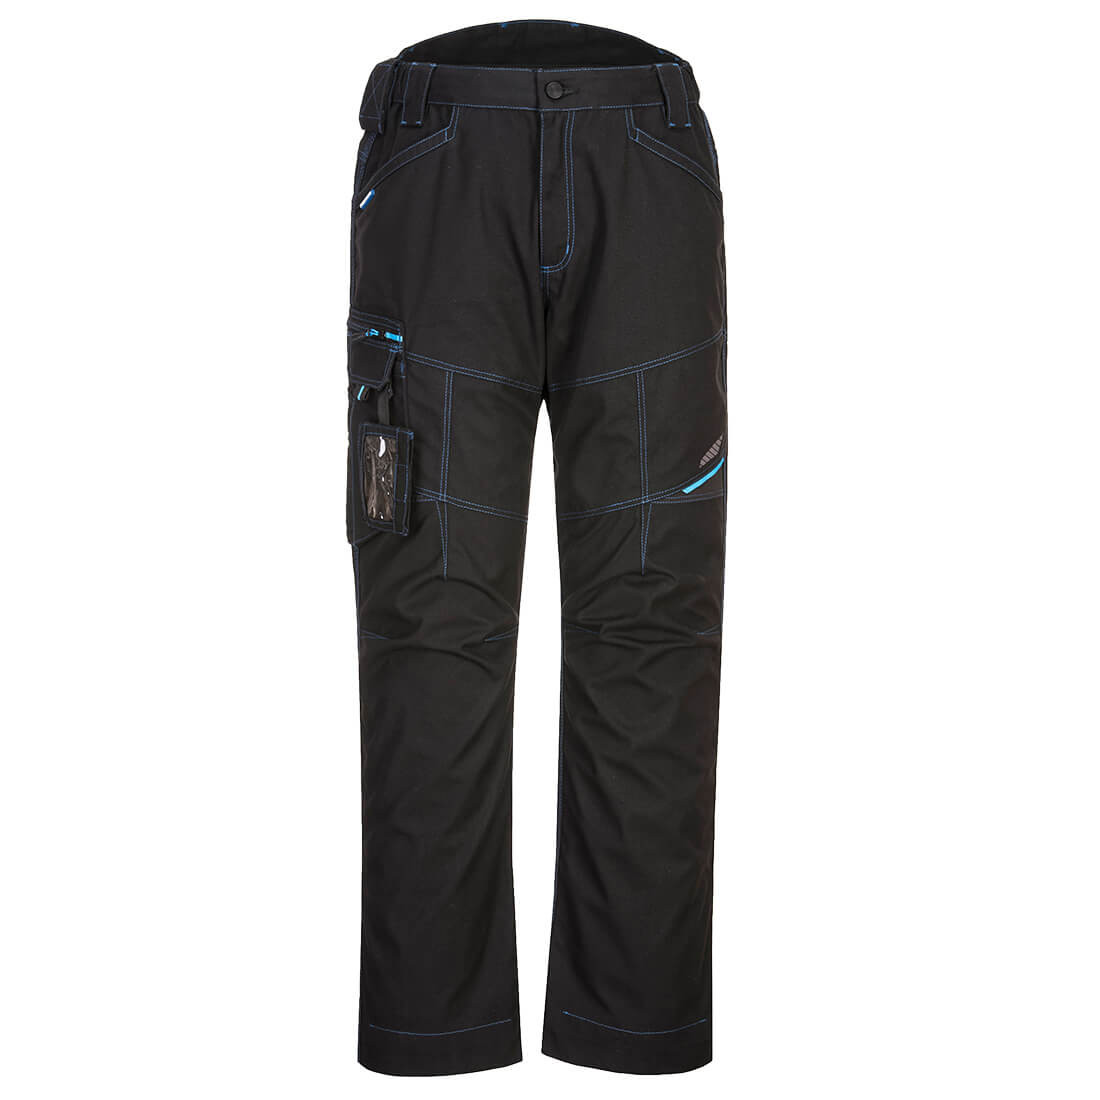 Pantalon de Service WX3 - Les vêtements de protection